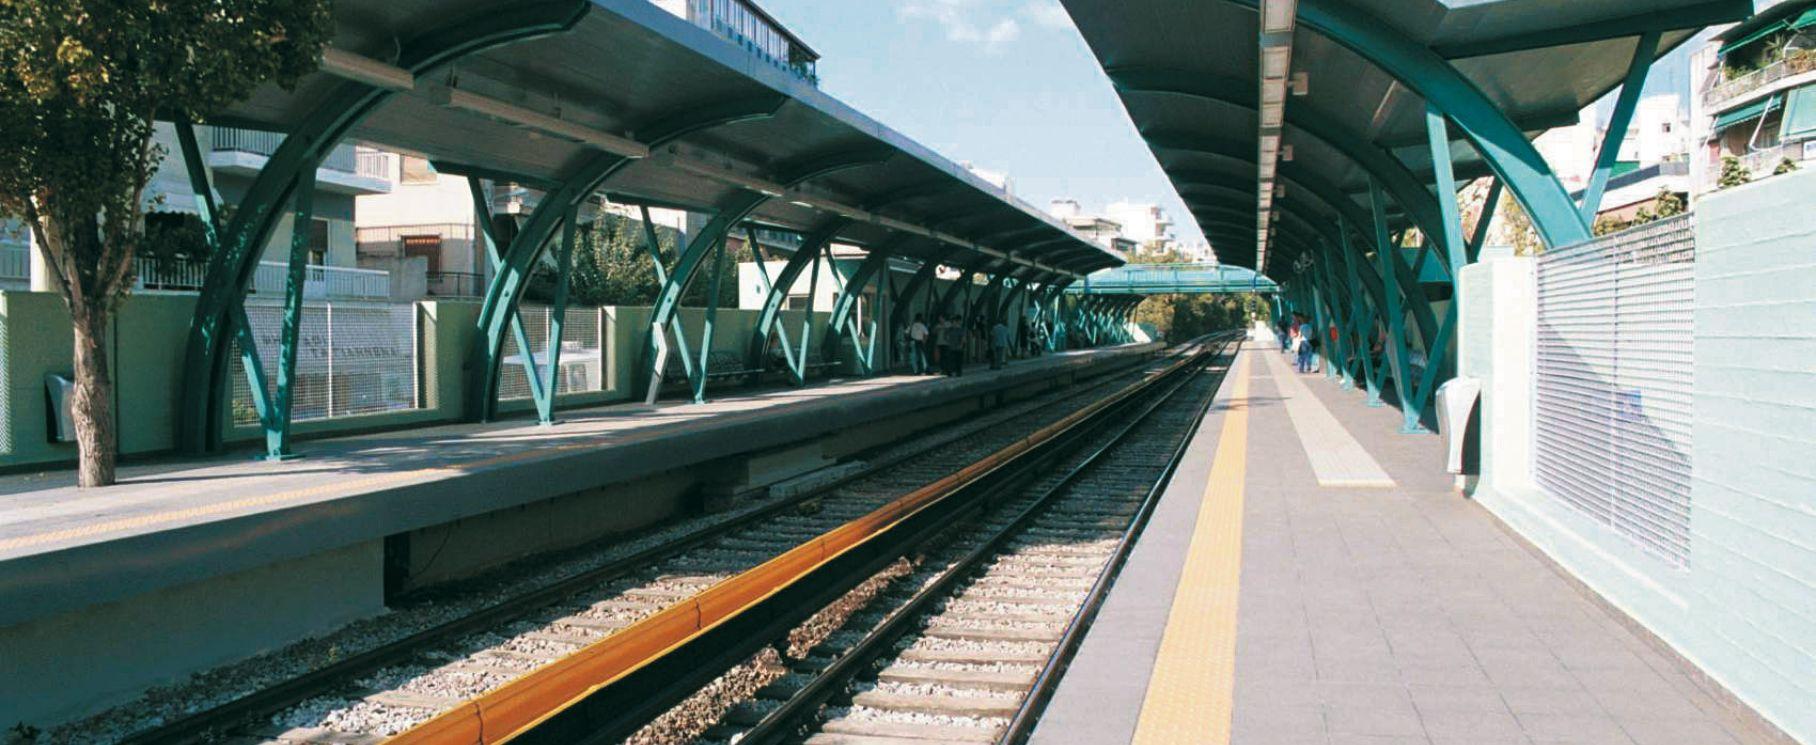 Ristrutturazione Stazioni Ferroviarie-1 | Casalgrande Padana